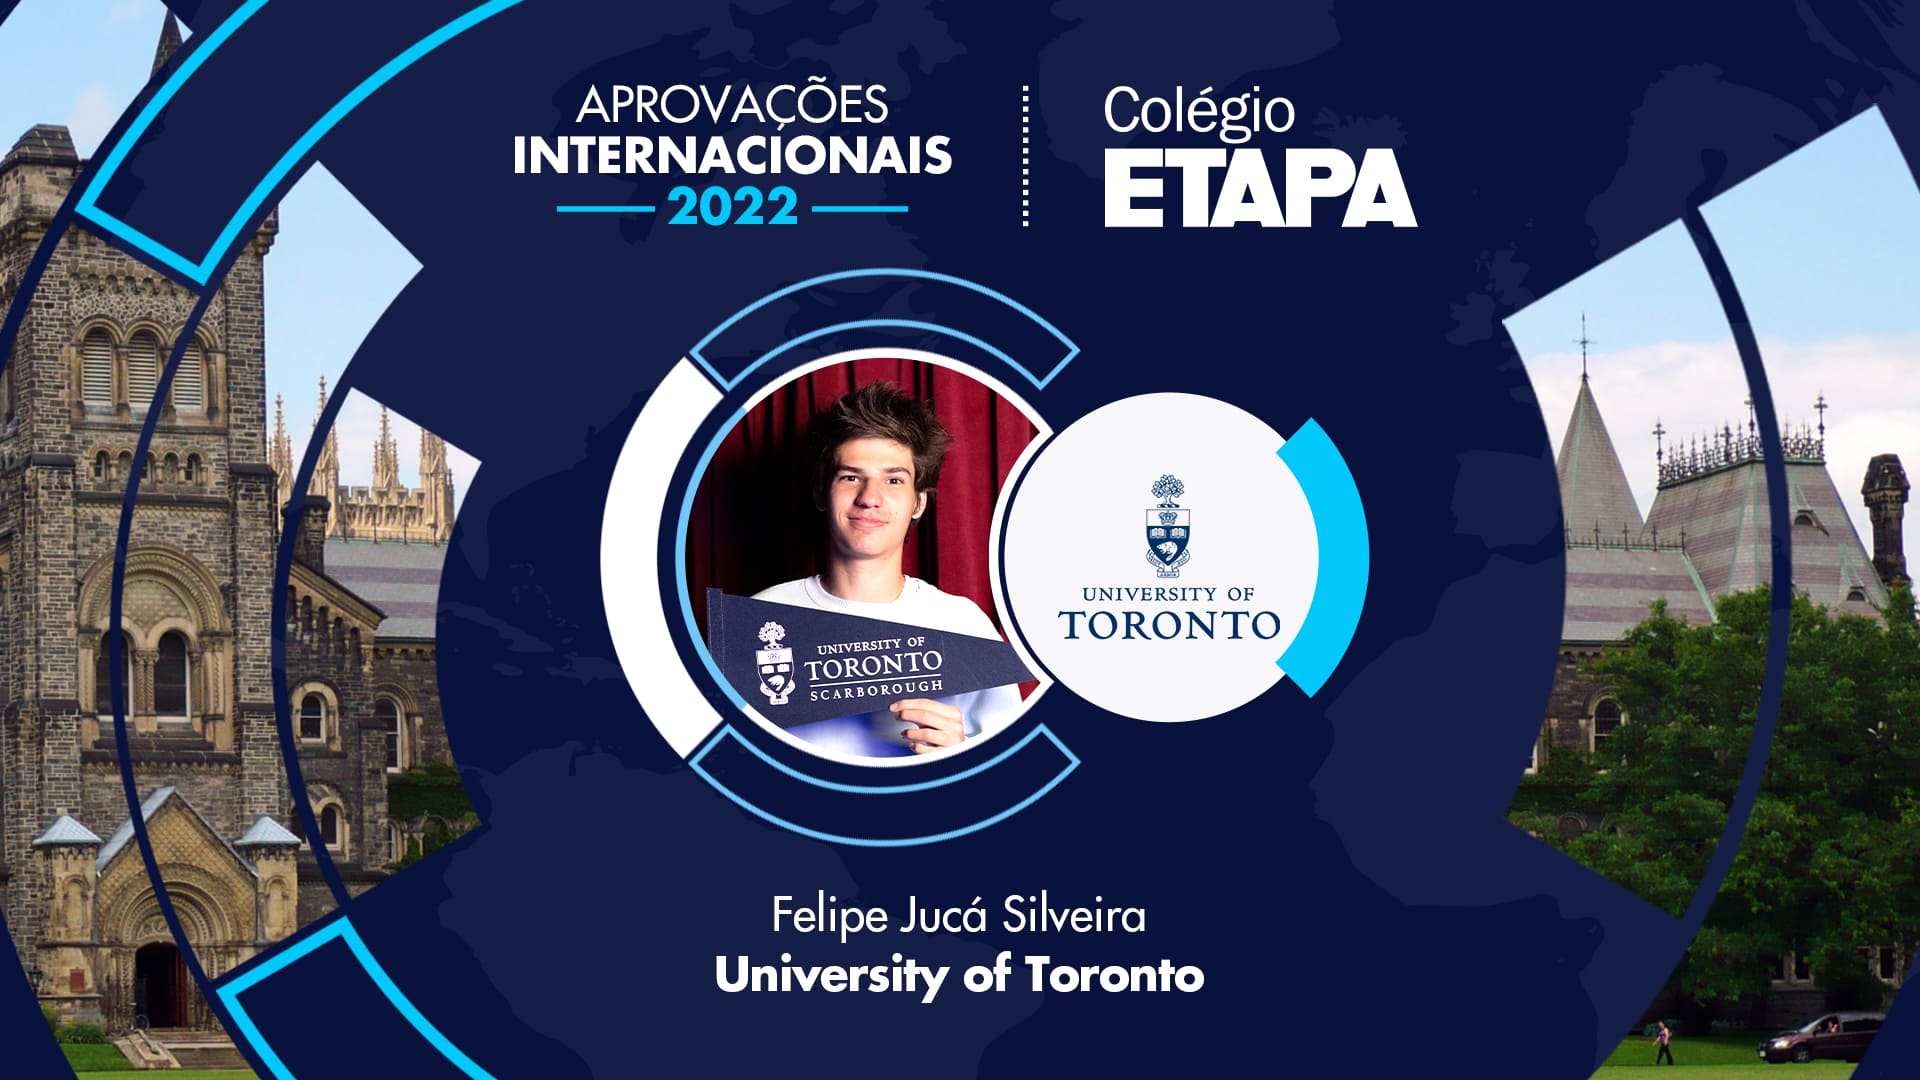 Felipe Jucá Silveira fala sobre sua jornada até a aprovação na University of Toronto, que lhe concedeu uma bolsa de estudos.